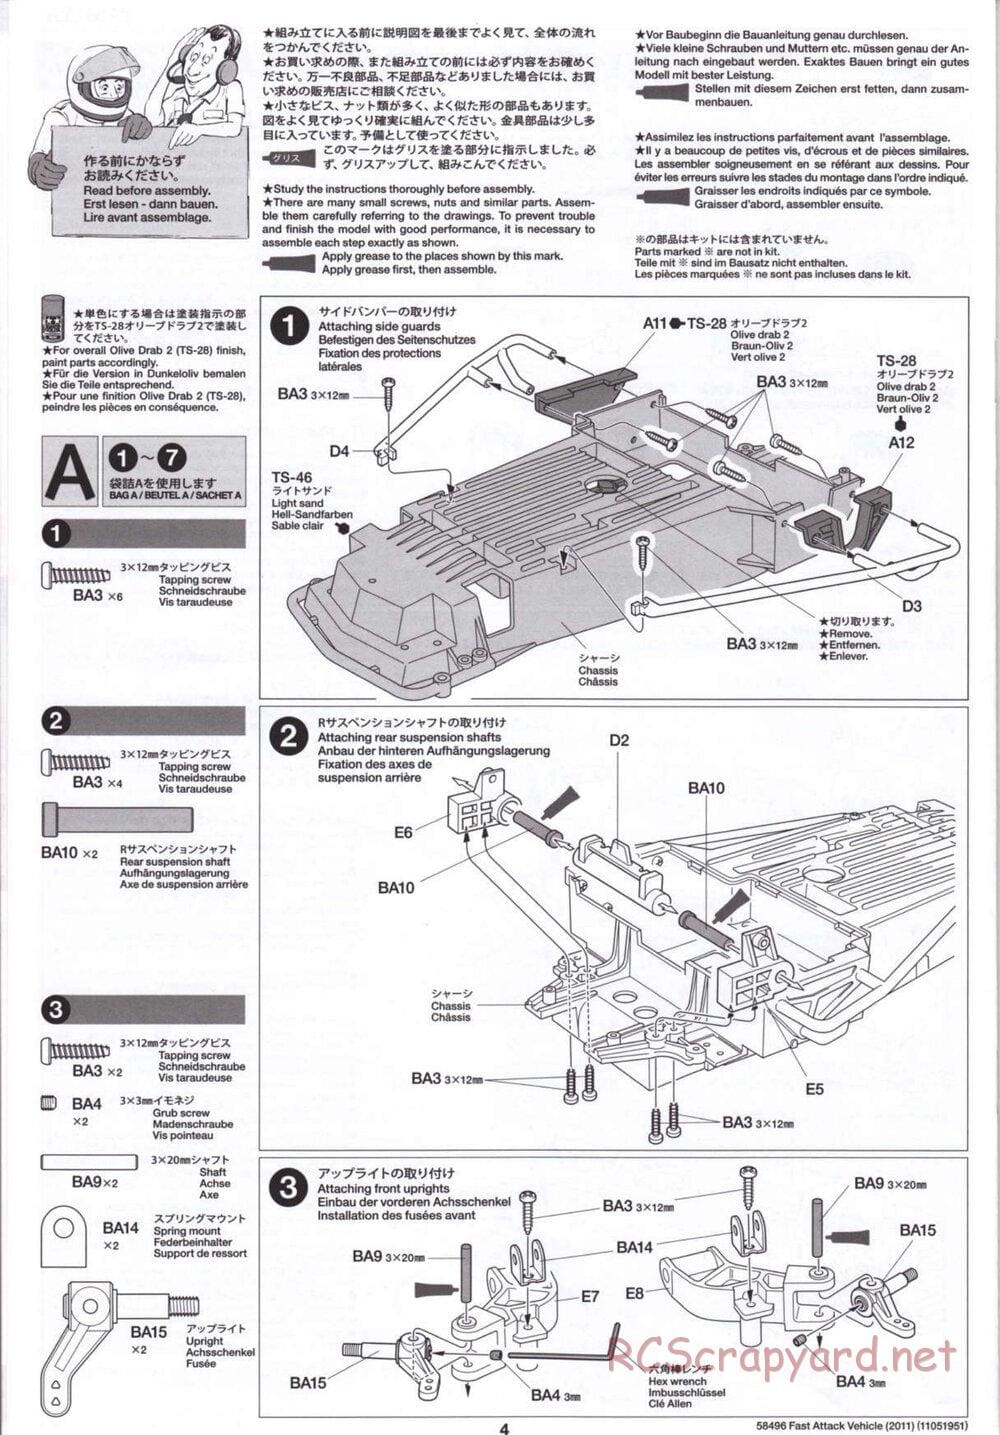 Tamiya - Fast Attack Vehicle 2011 - FAV Chassis - Manual - Page 4